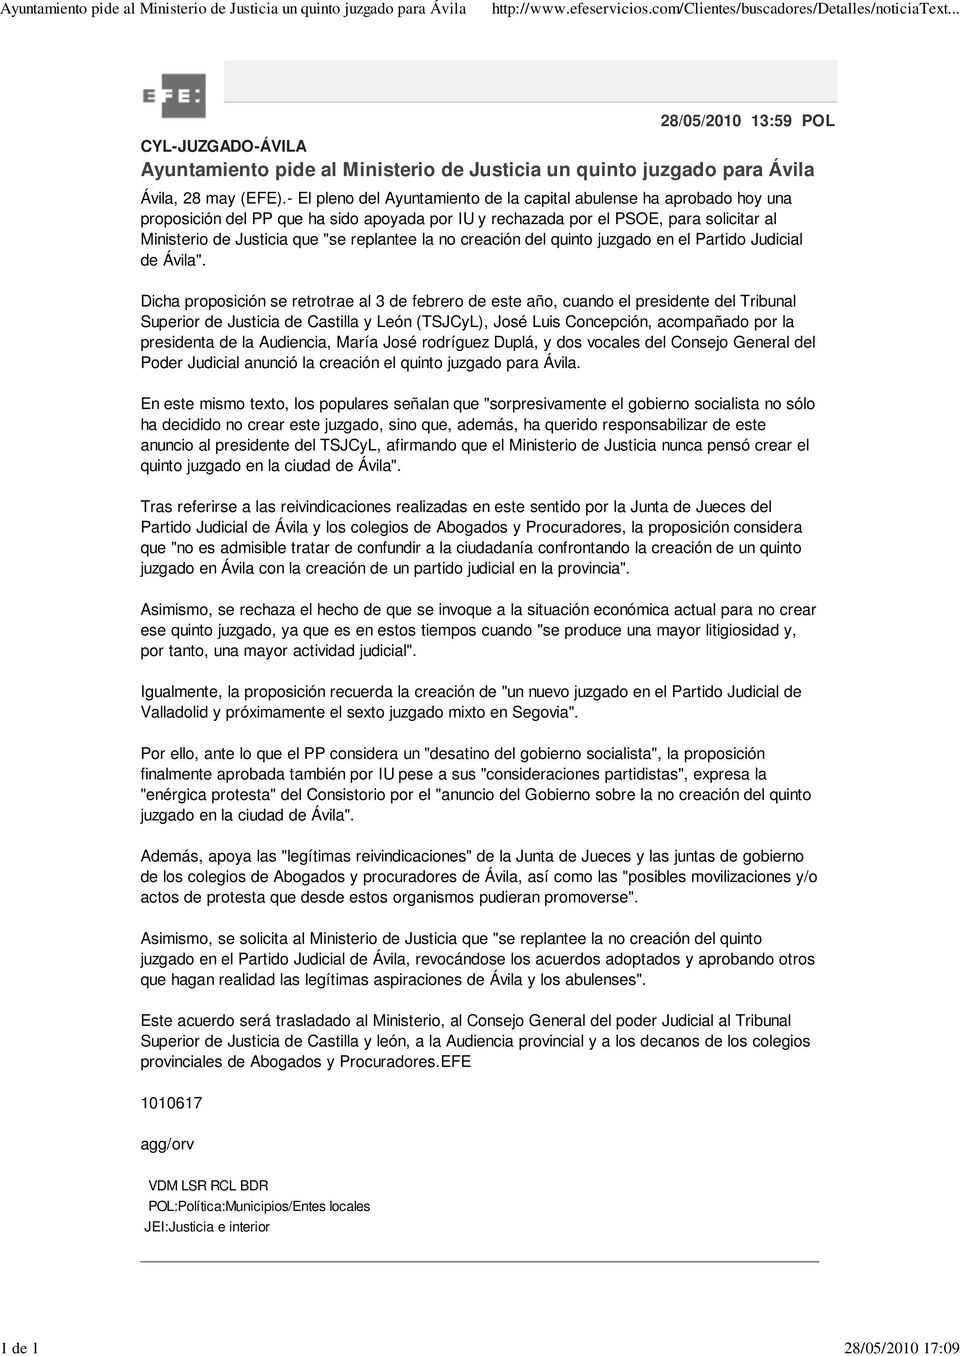 - El pleno del Ayuntamiento de la capital abulense ha aprobado hoy una proposición del PP que ha sido apoyada por IU y rechazada por el PSOE, para solicitar al Ministerio de Justicia que "se